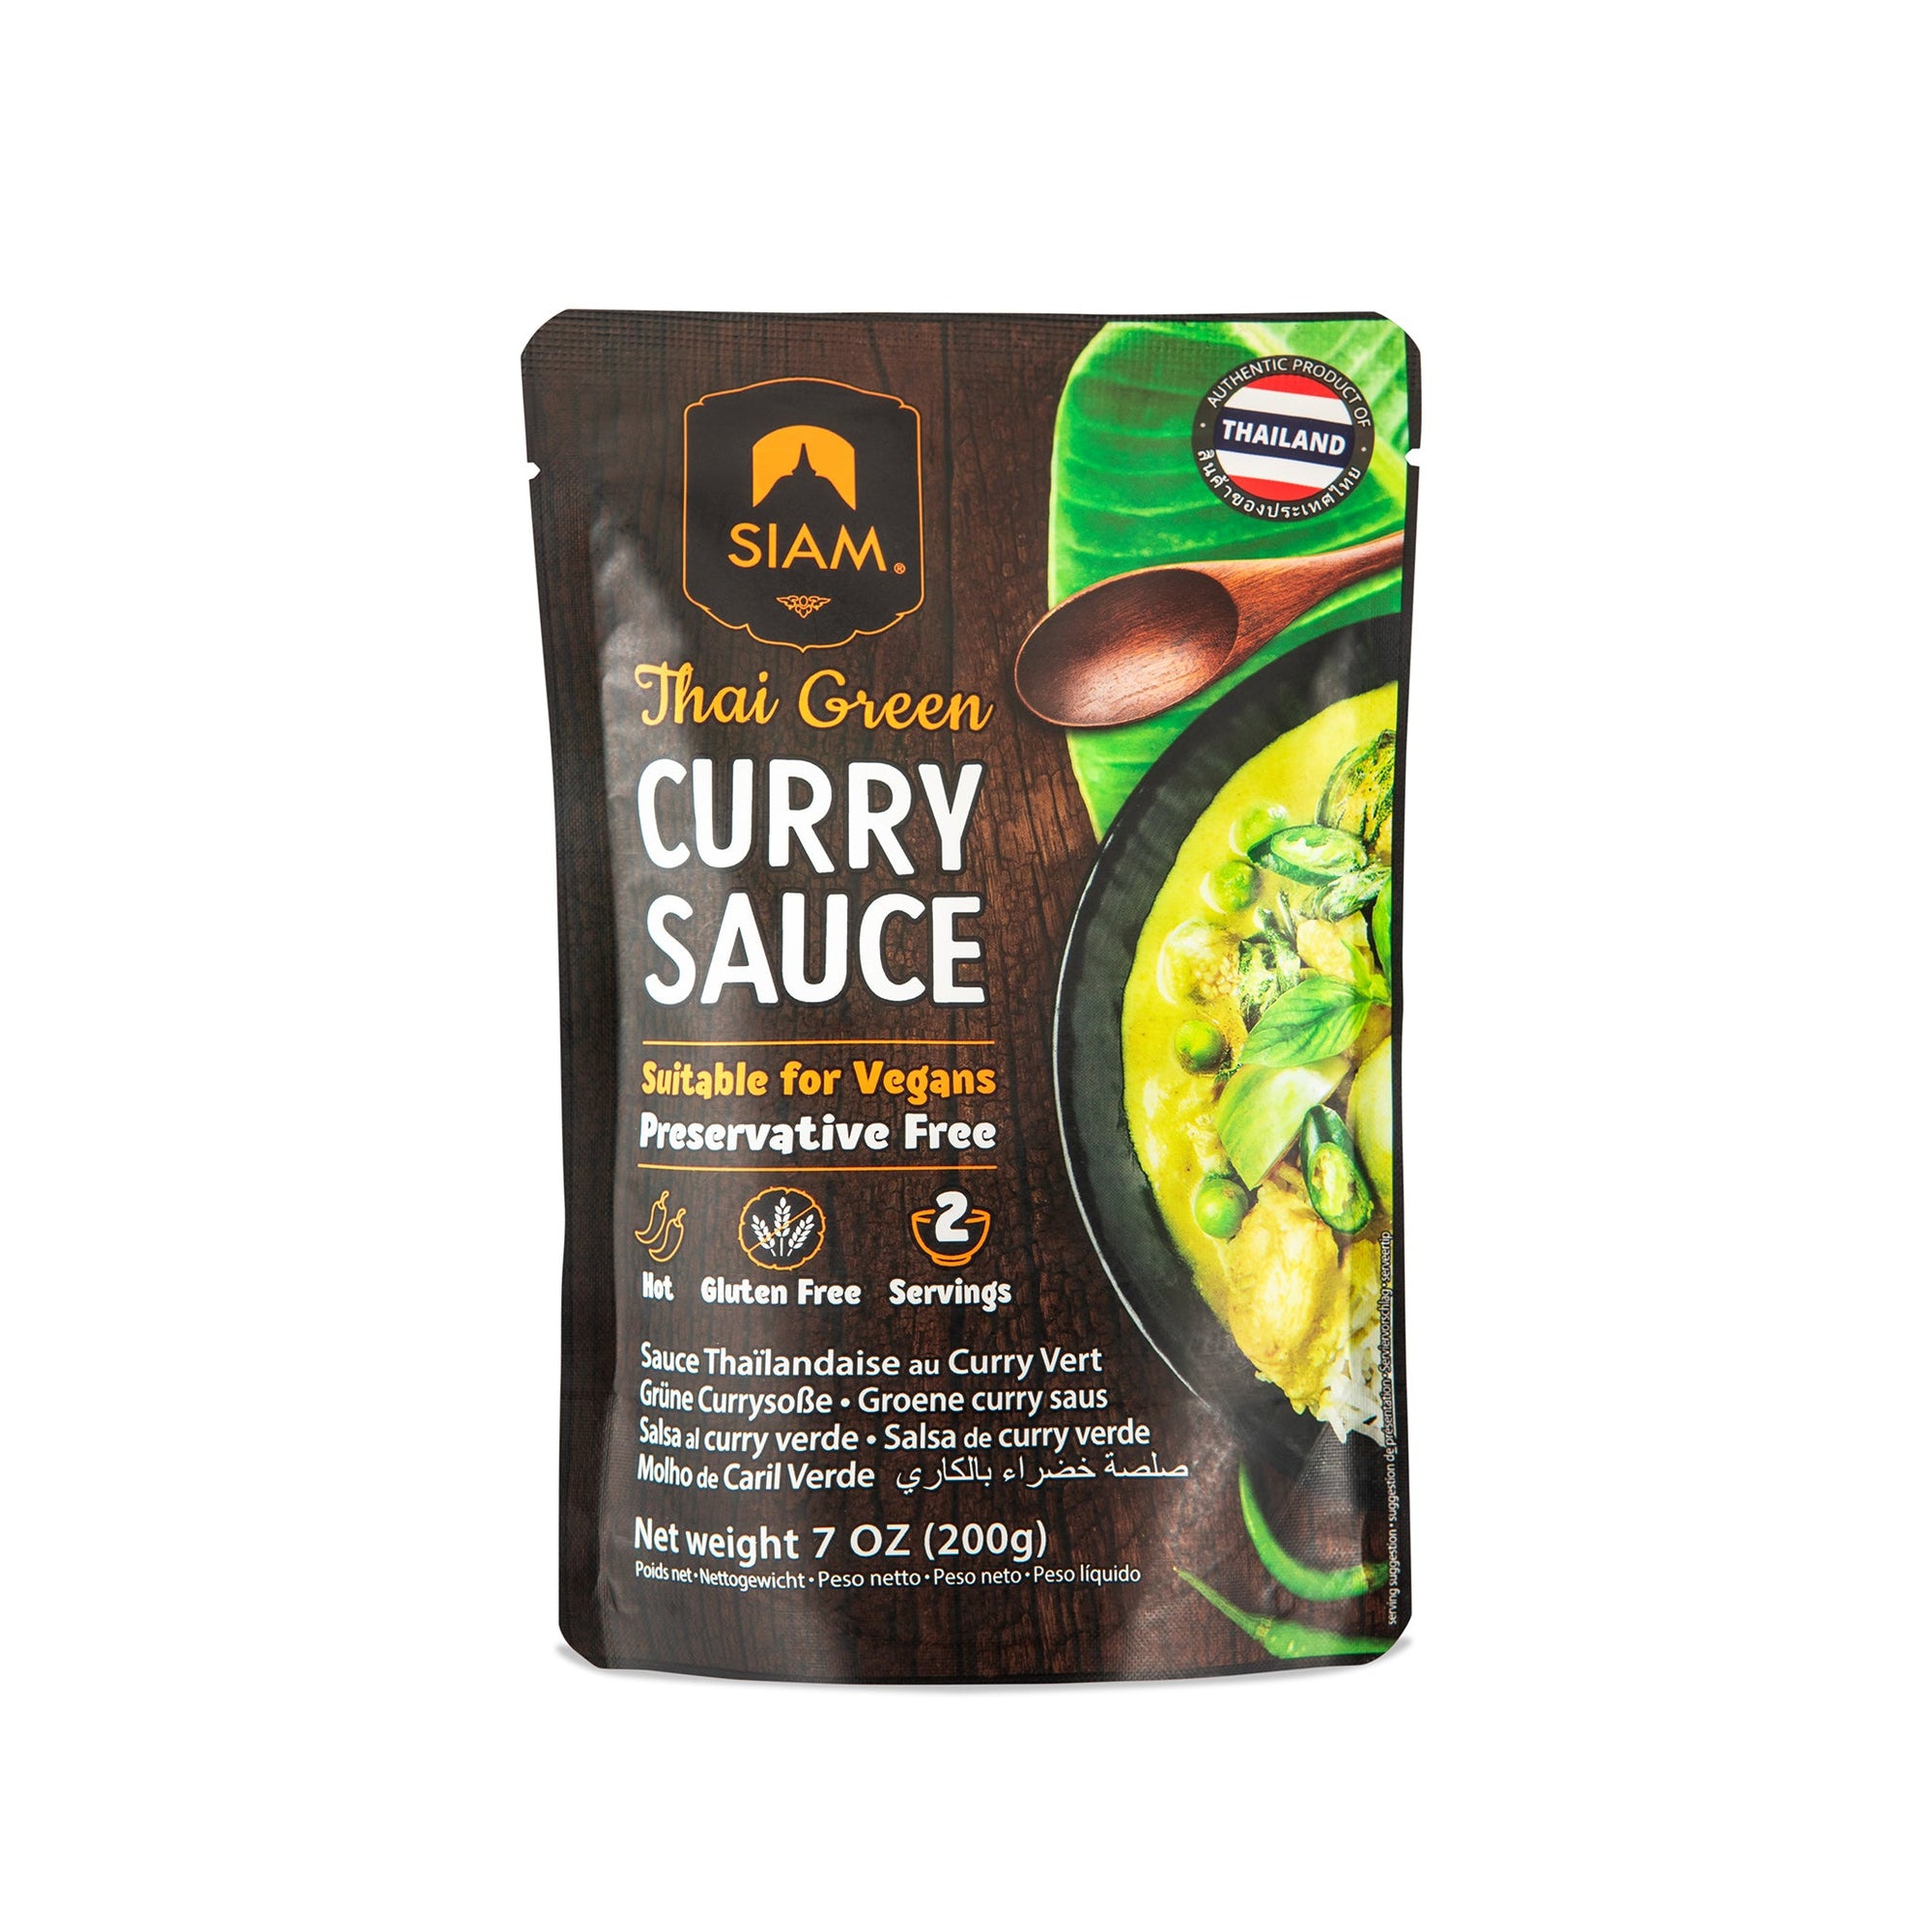 SIAM Green Thai Curry Sauce, 7 oz (200g)